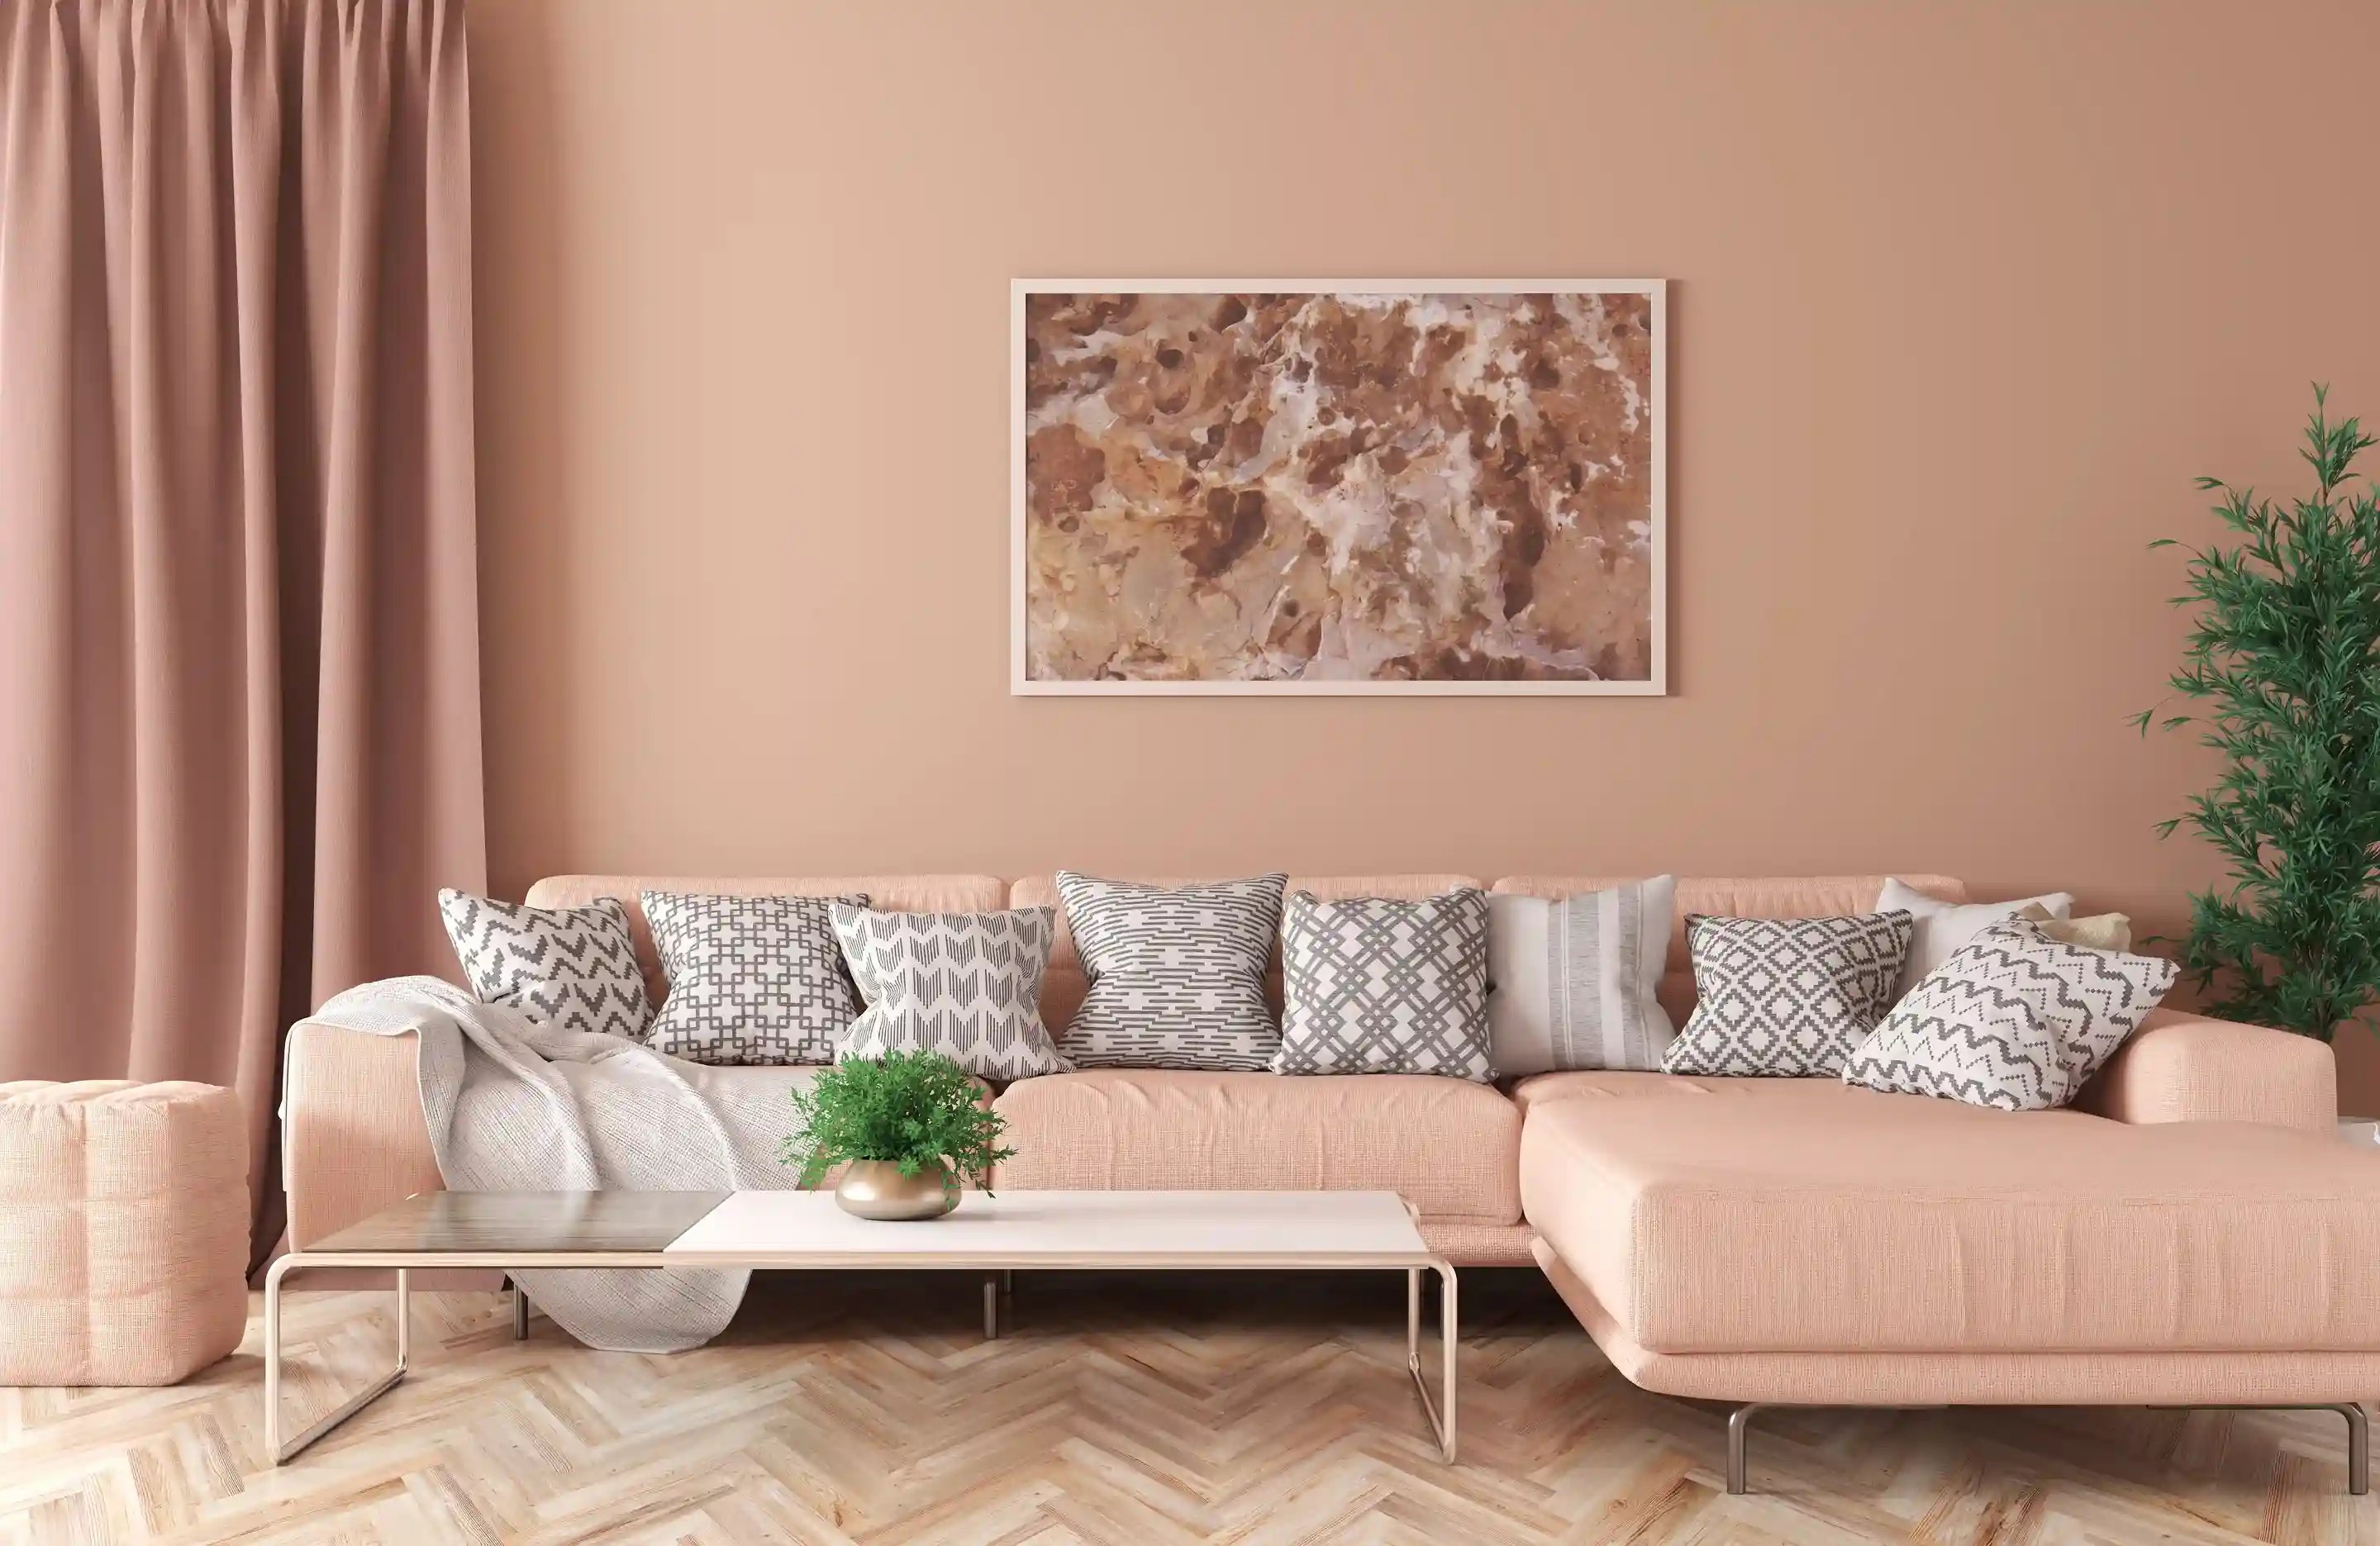 Salon w stylu minimalistycznym w kolorze peach fuzz. W centrum znajduje się różowa kanapa, na niej poduszki, a nad nią obraz. Przed kanapą stoi stolik.